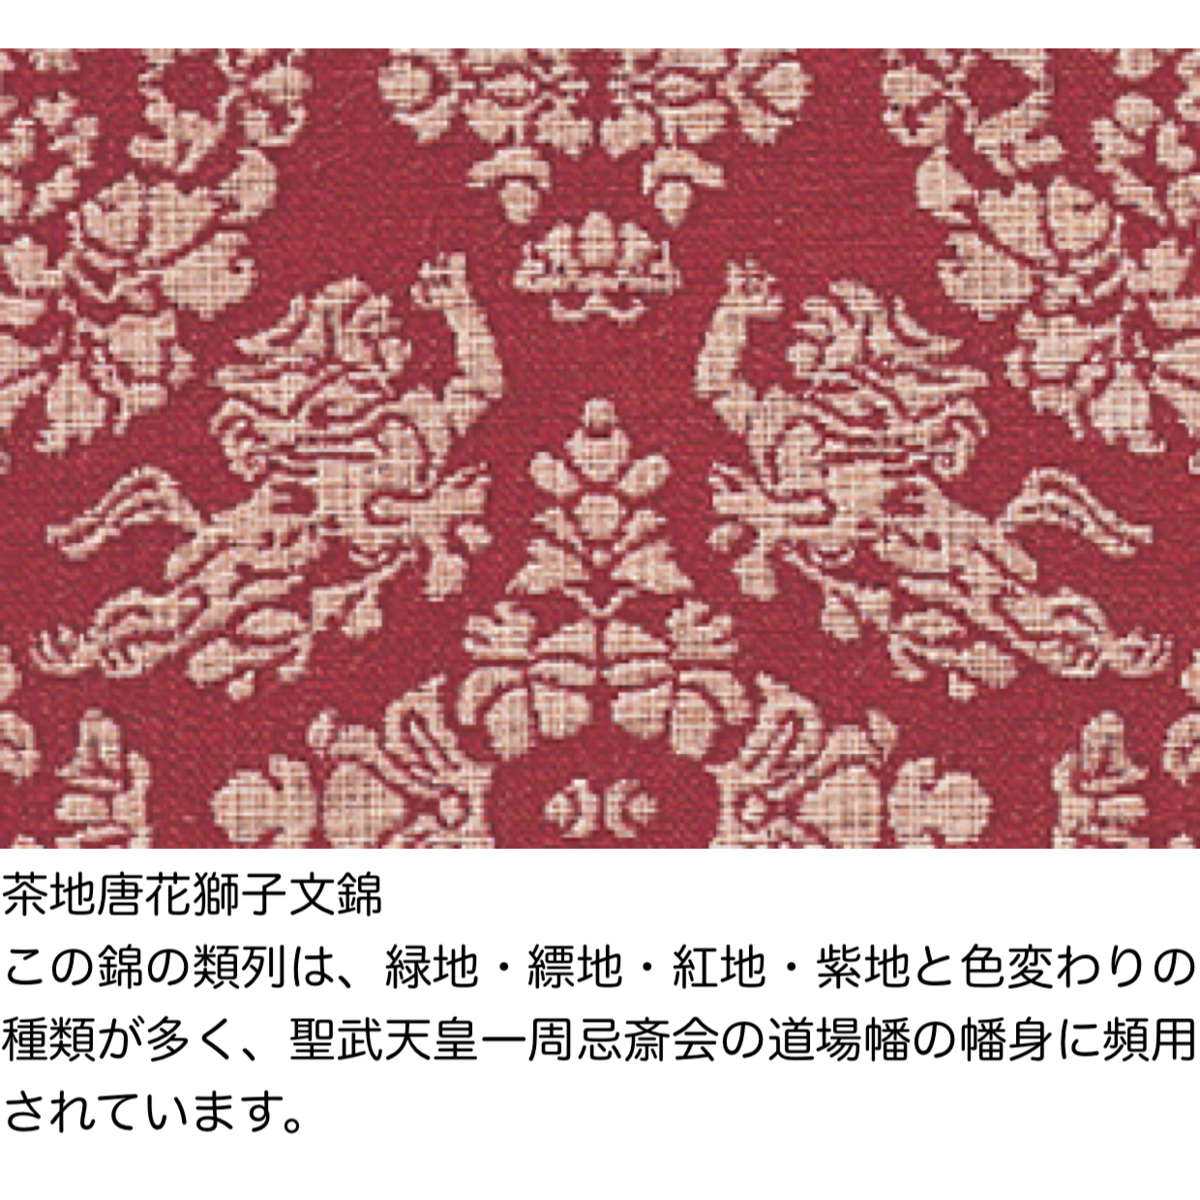 # furoshiki 120 # regular ...[ lion writing red ]120cm( interior Cross as . optimum )M68-20821-008